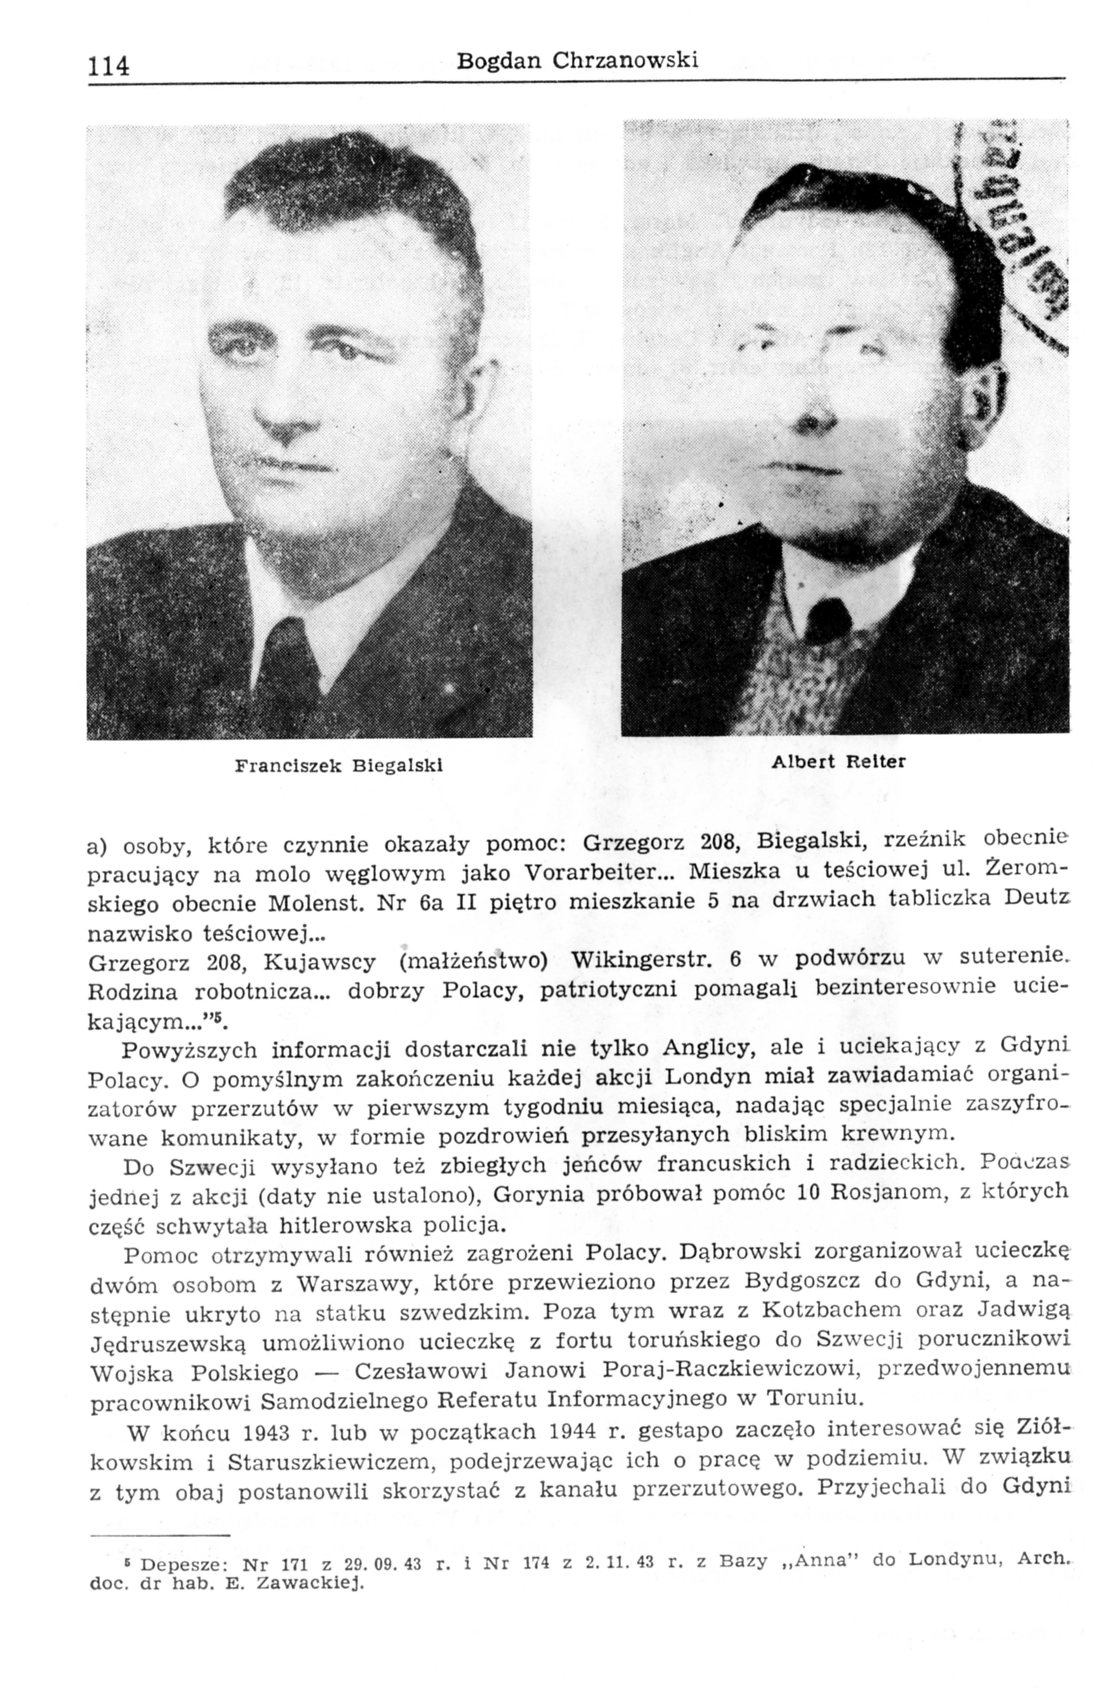 Przerzuty uciekinierów na trasie Gdynia - Szwecja w latach 1939-1945